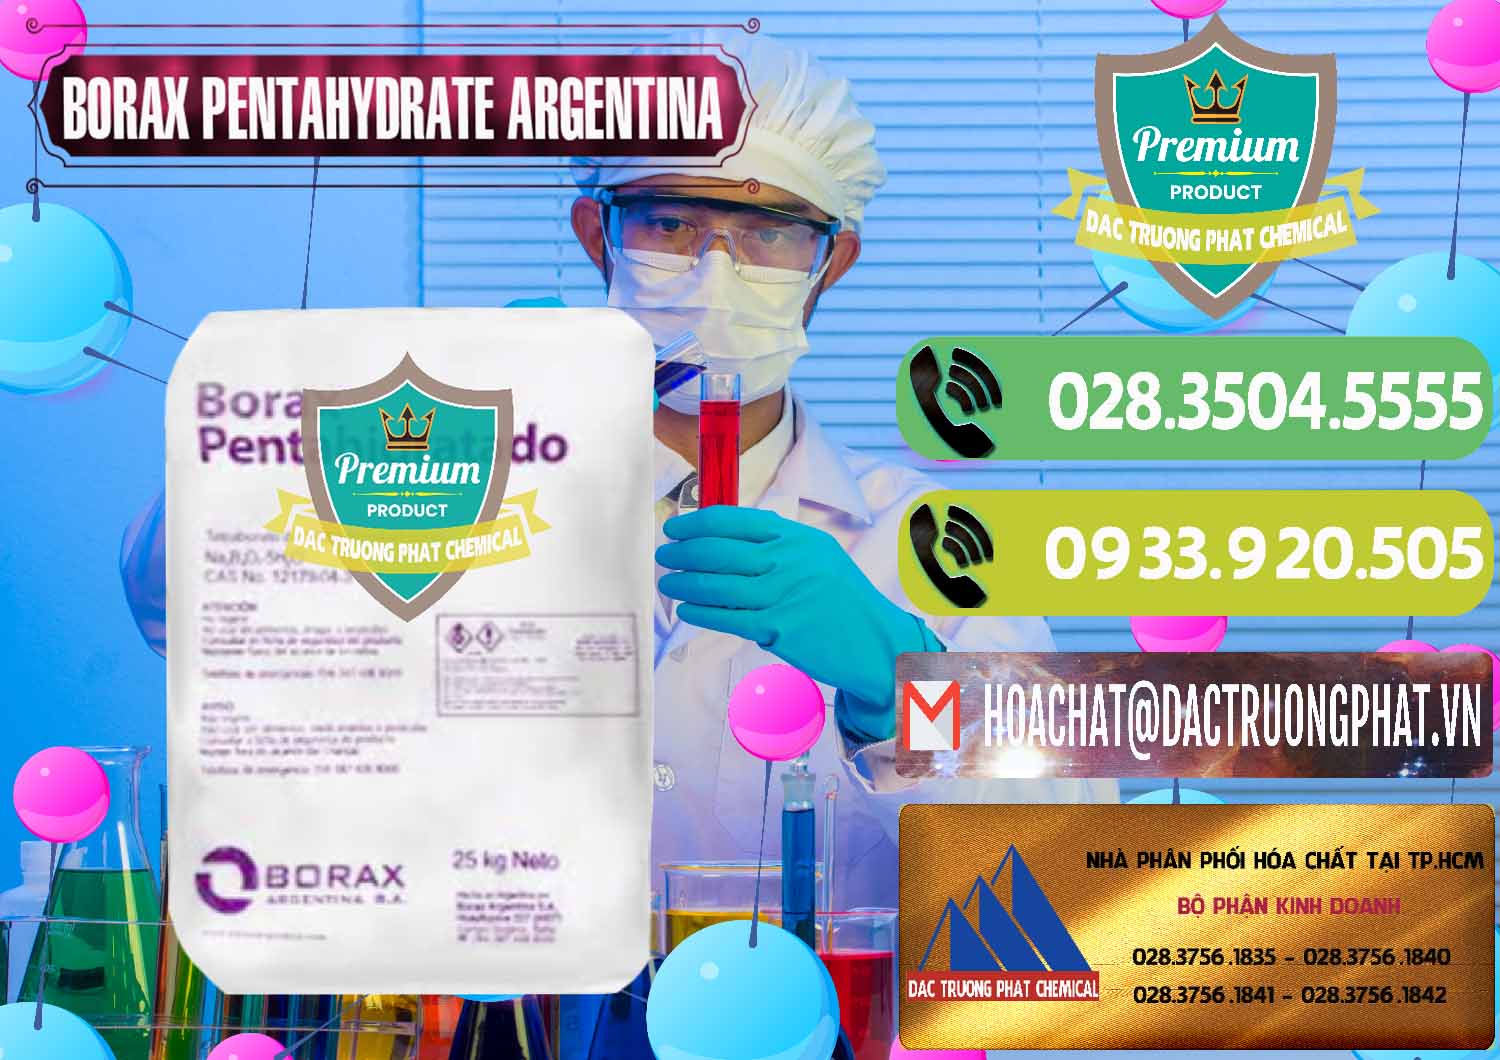 Đơn vị nhập khẩu & bán Borax Pentahydrate Argentina - 0447 - Kinh doanh _ phân phối hóa chất tại TP.HCM - hoachatmientay.vn